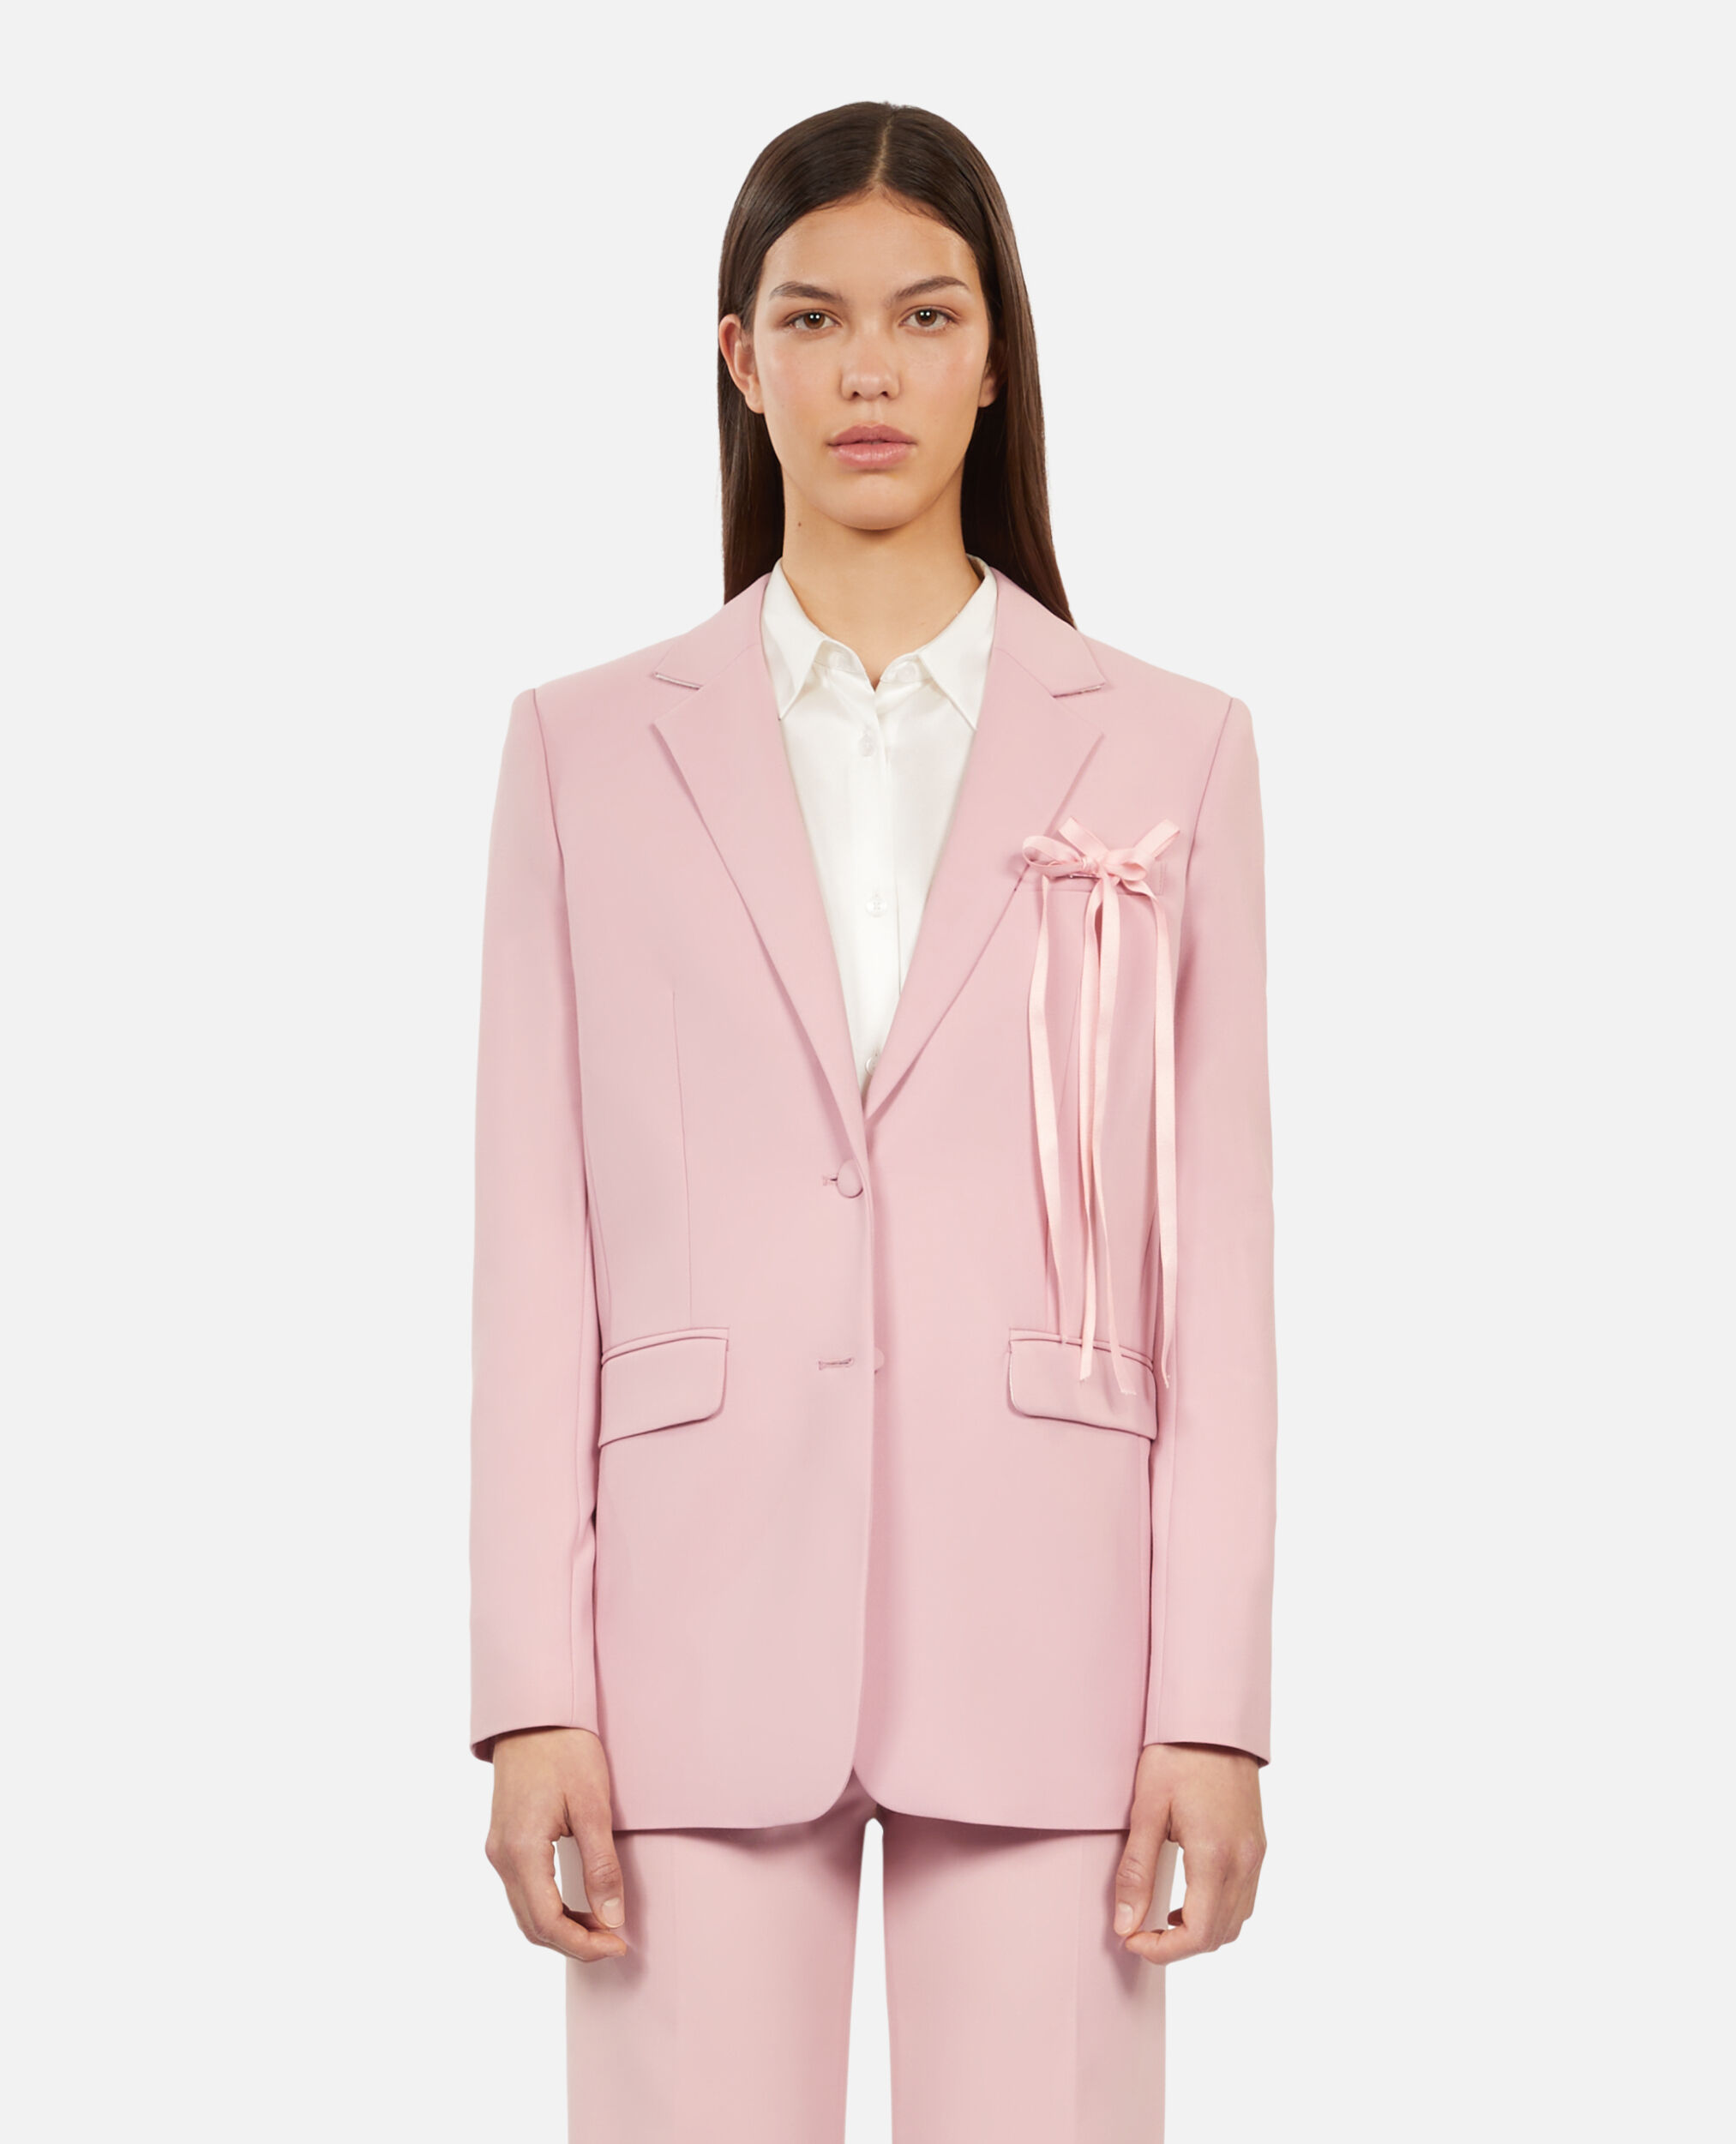 Chaqueta traje rosa mezcla lana, PASTEL PINK, hi-res image number null